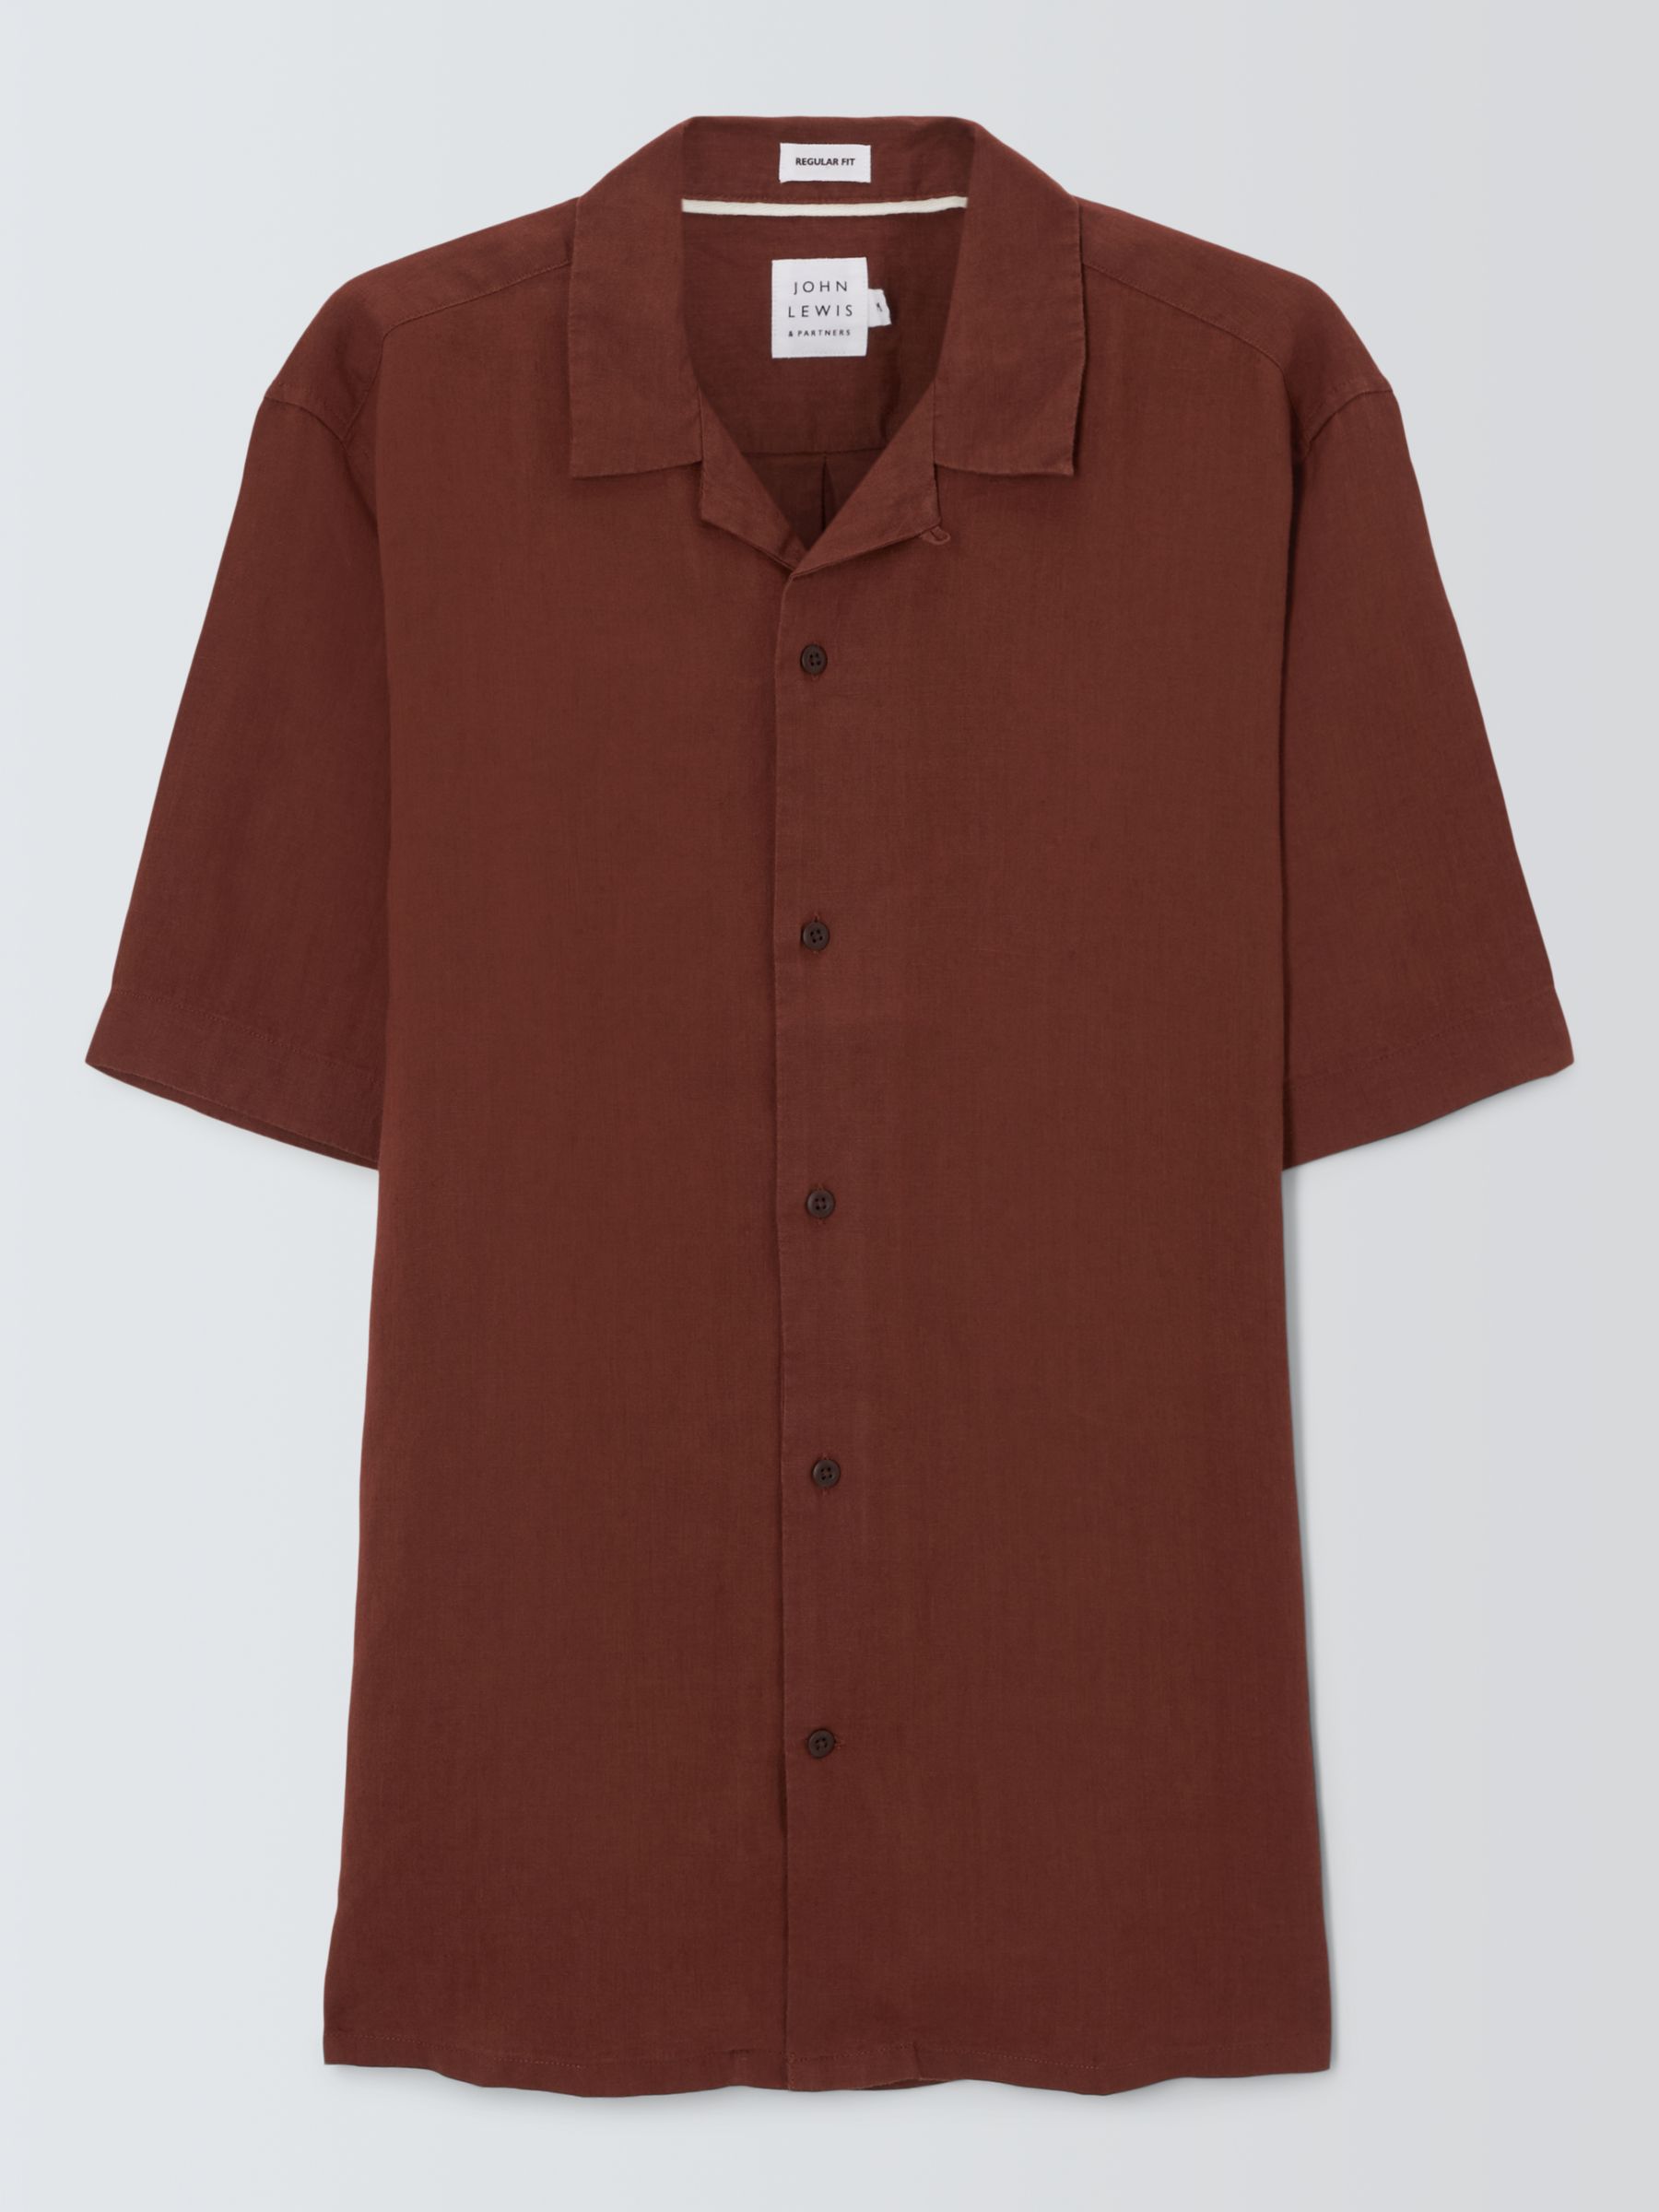 Buy John Lewis Linen Revere Collar Short Sleeve Shirt Online at johnlewis.com